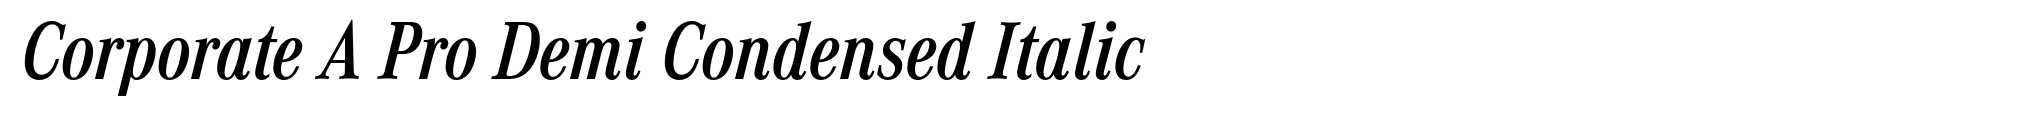 Corporate A Pro Demi Condensed Italic image